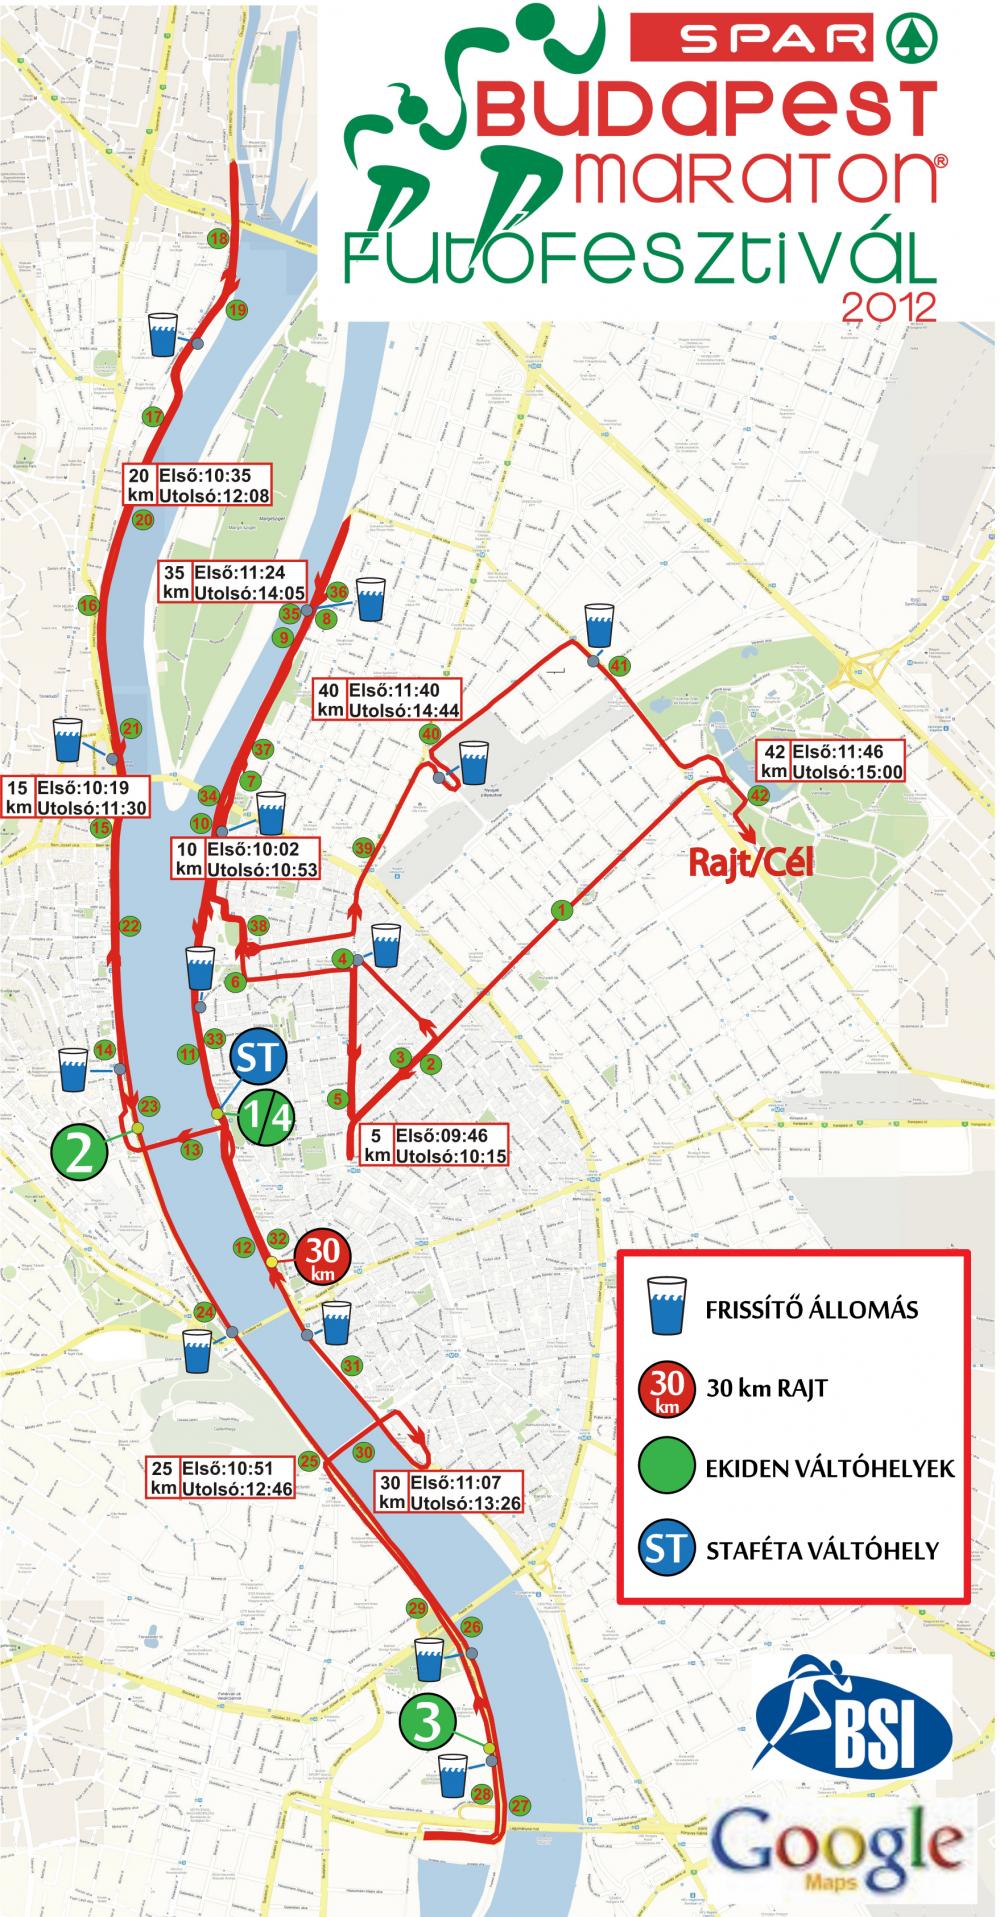 útvonal térkép budapest 27. Spar Budapest Maraton   térkép   Futanet.hu útvonal térkép budapest